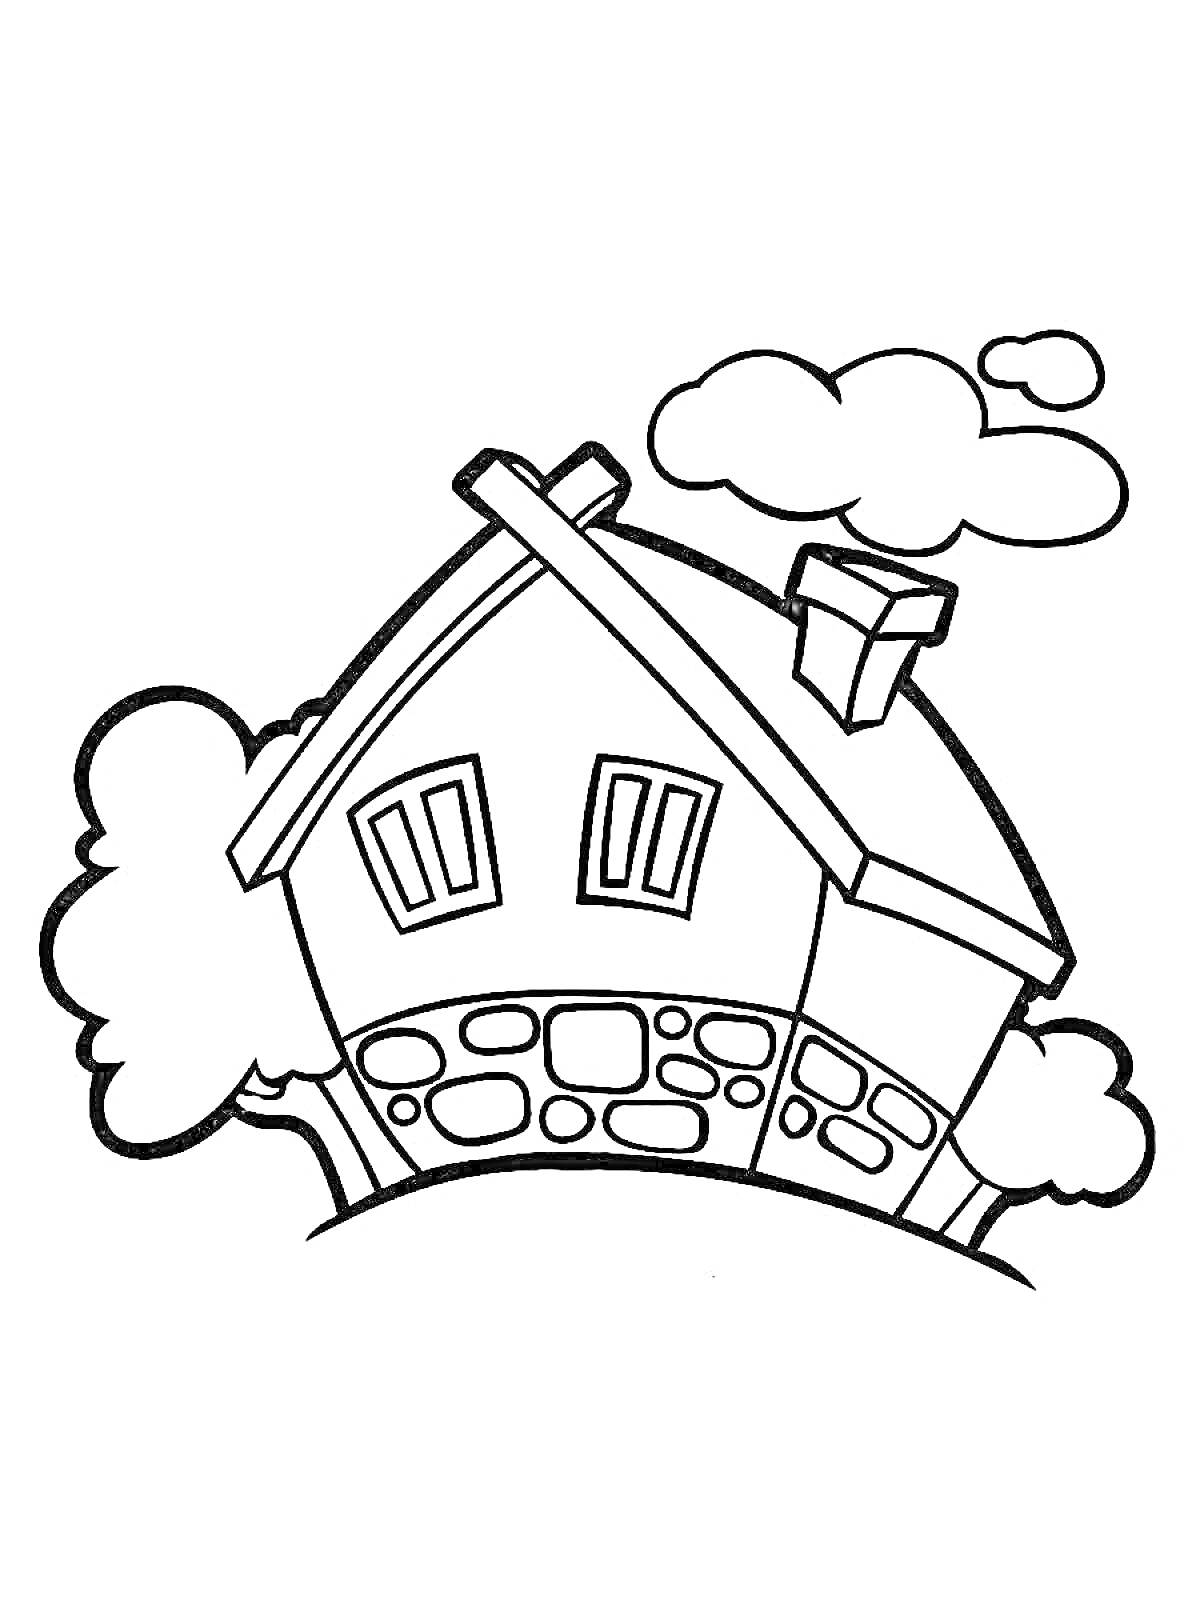 Раскраска Домик на холме с каменным основанием, окнами, трубой и кустами, окруженный облаками